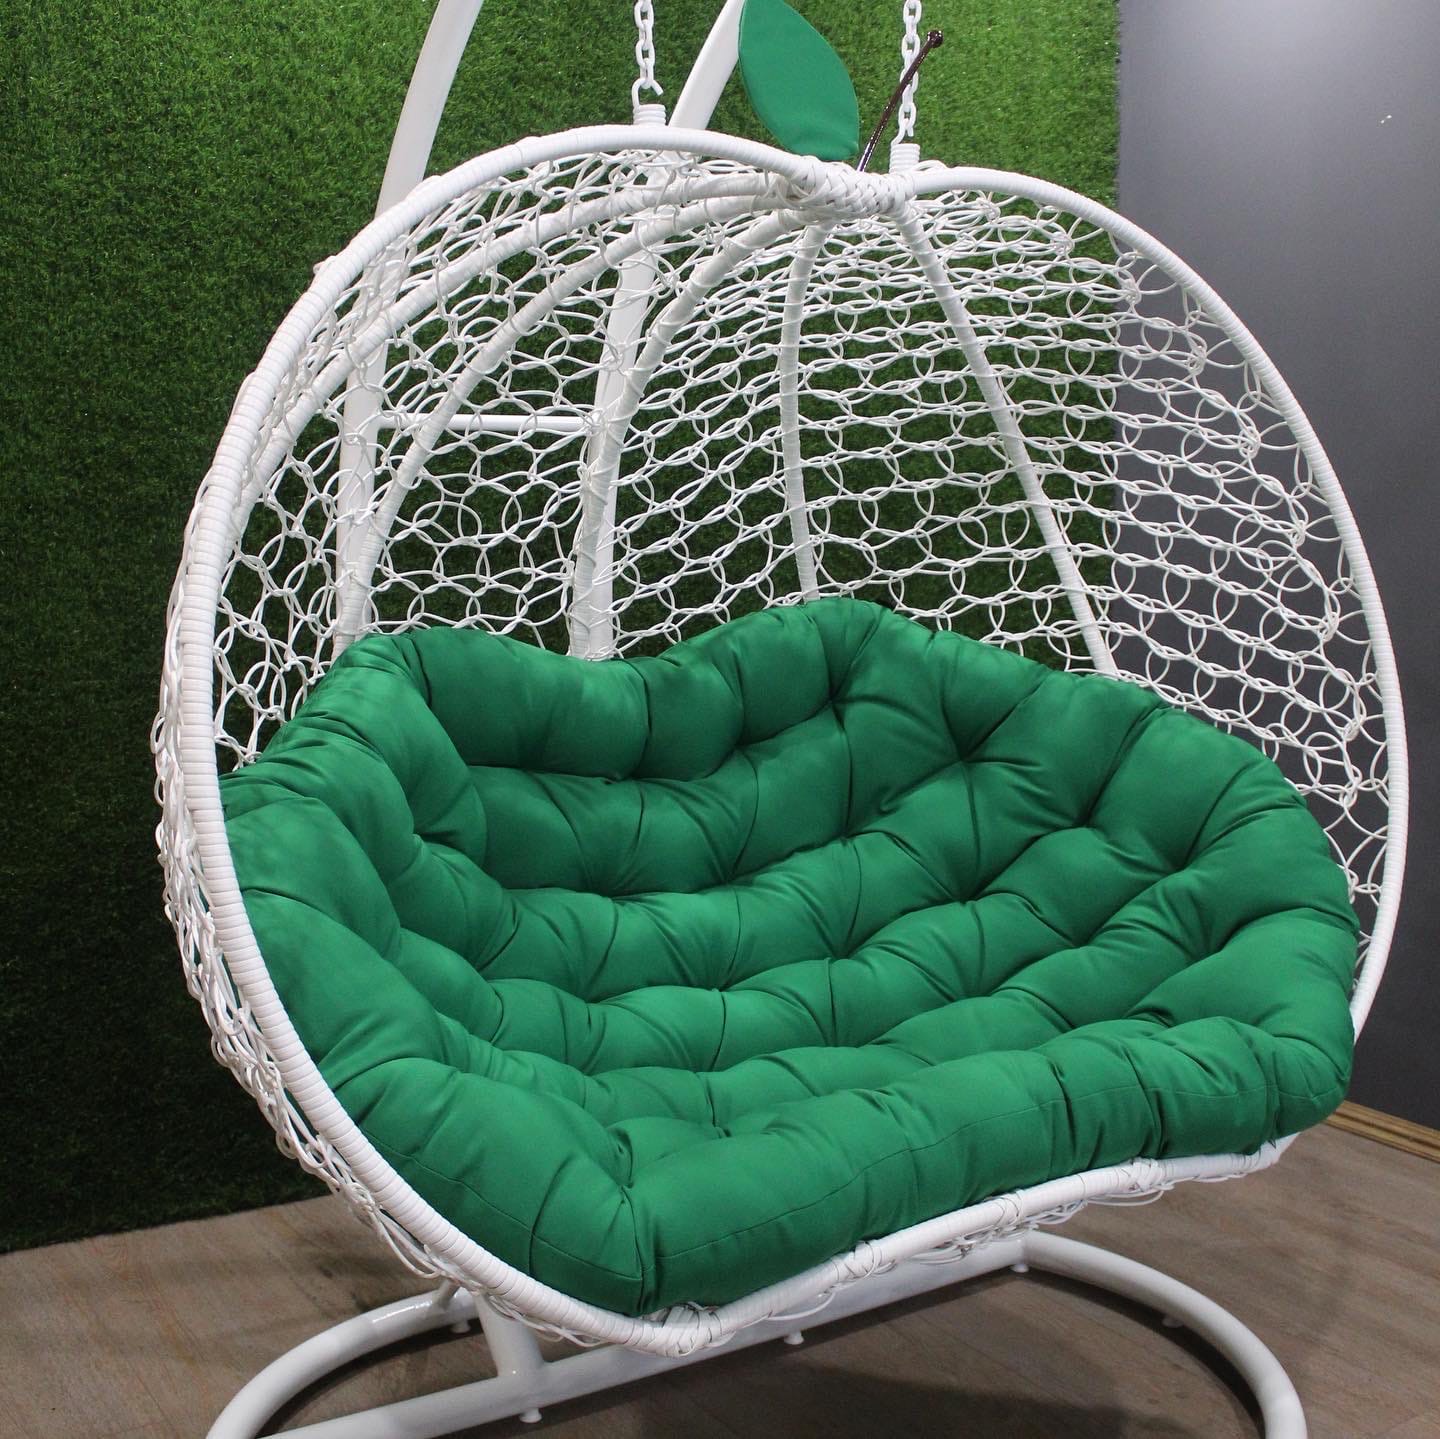 Подвесное кресло ЯБЛОКО вид в профиль цвет белый с зеленой подушкой